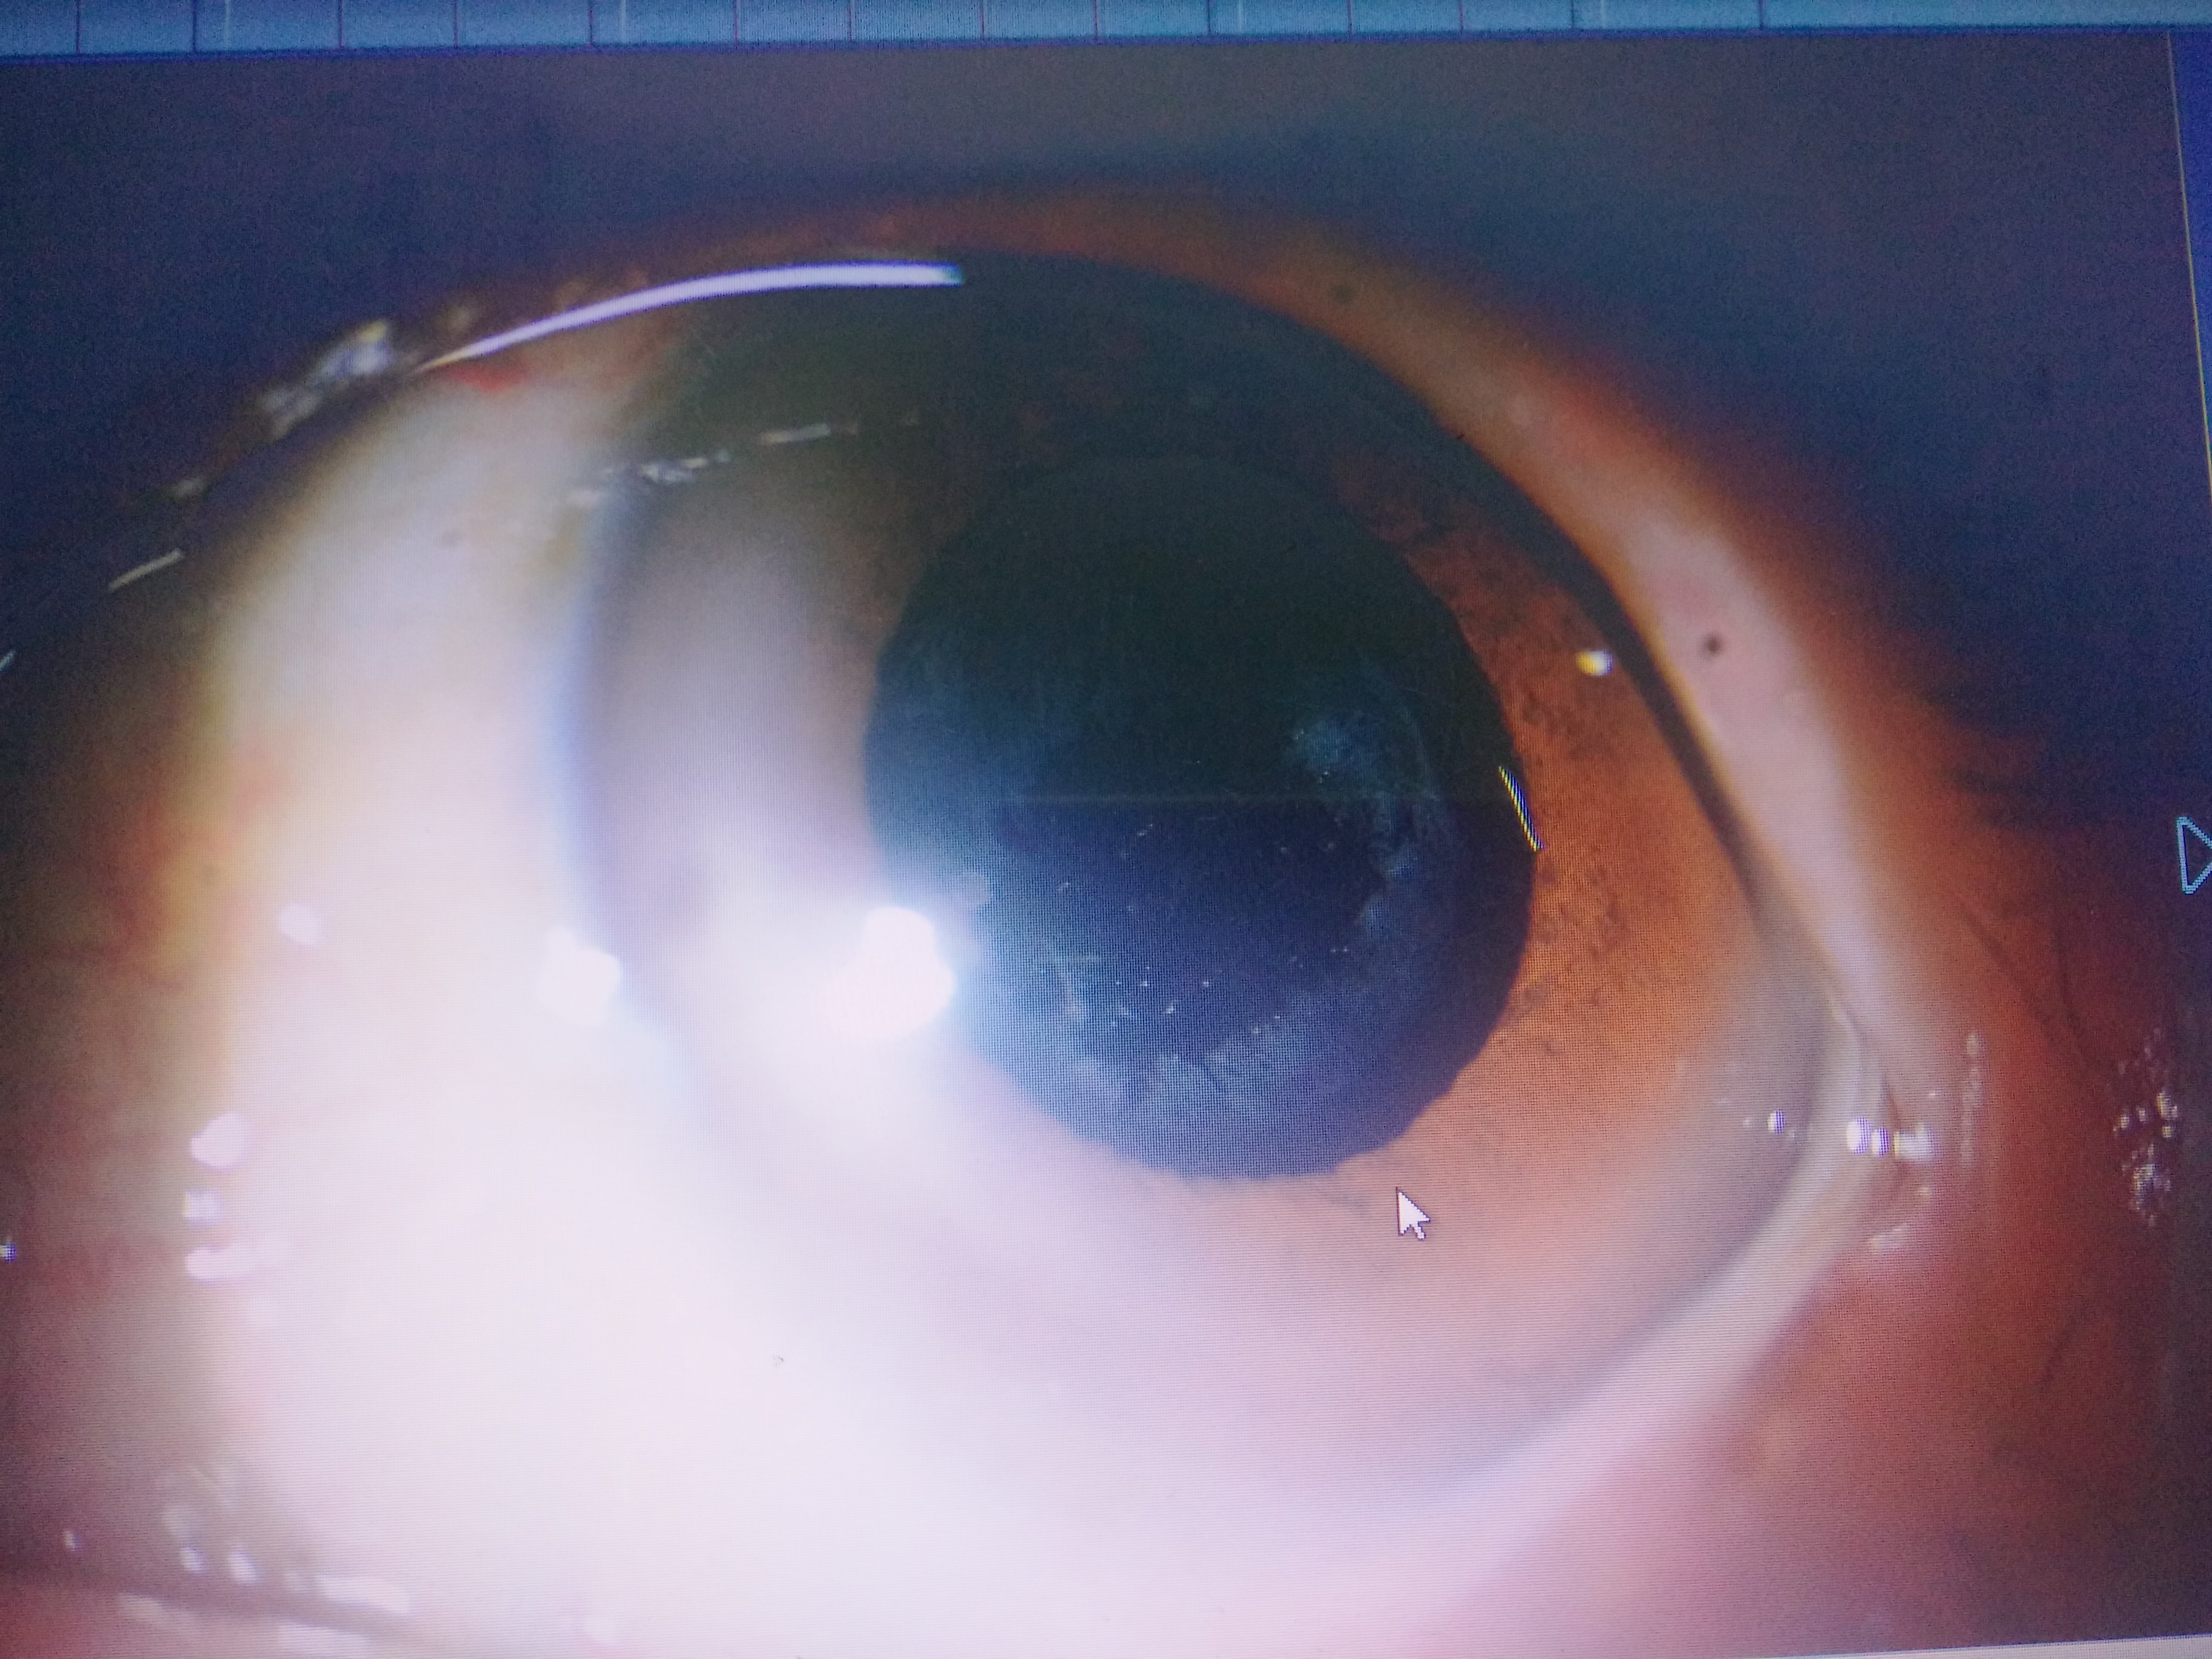 后发障术前(未扩瞳)对于影响视力的后发性白内障,yag激光后囊膜切开术